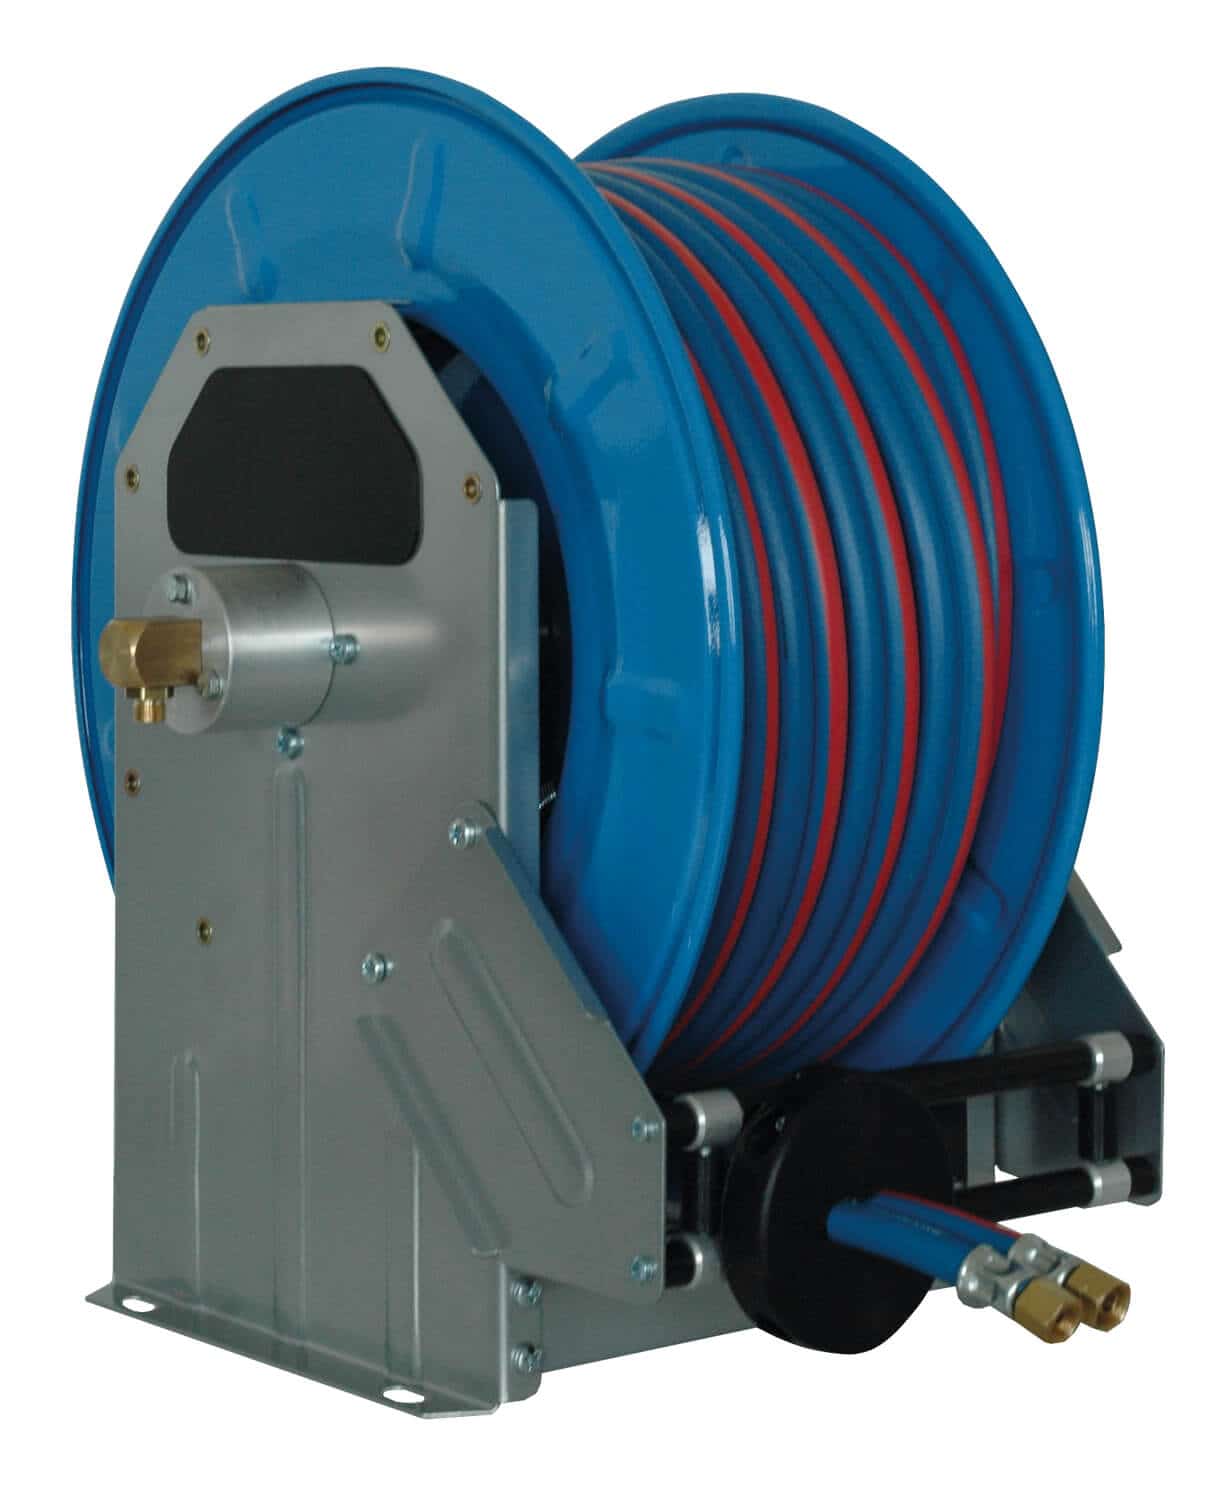 Automatischer Schlauchaufroller für technische Gase mit 10 m Spezial-Doppelschlauch DN 06/09, zur Wand-, Boden- oder Deckenmontage.